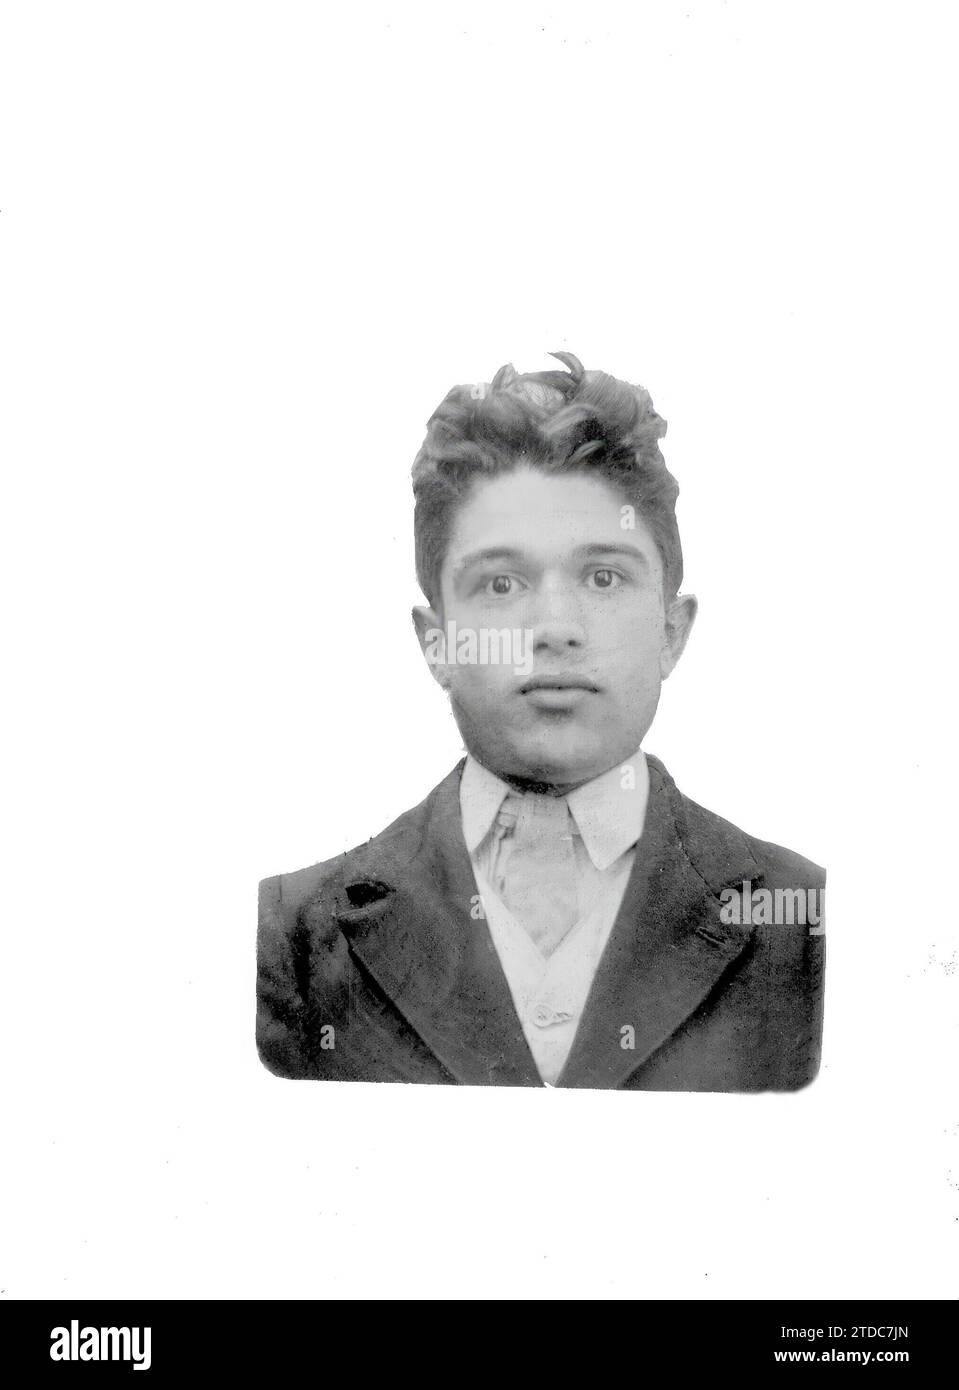 08/31/1911. L'anarchico Francisco Jordan Gallegos, che oggi apparirà davanti al pubblico di Barcellona. Crediti: Album / Archivo ABC / García Foto Stock